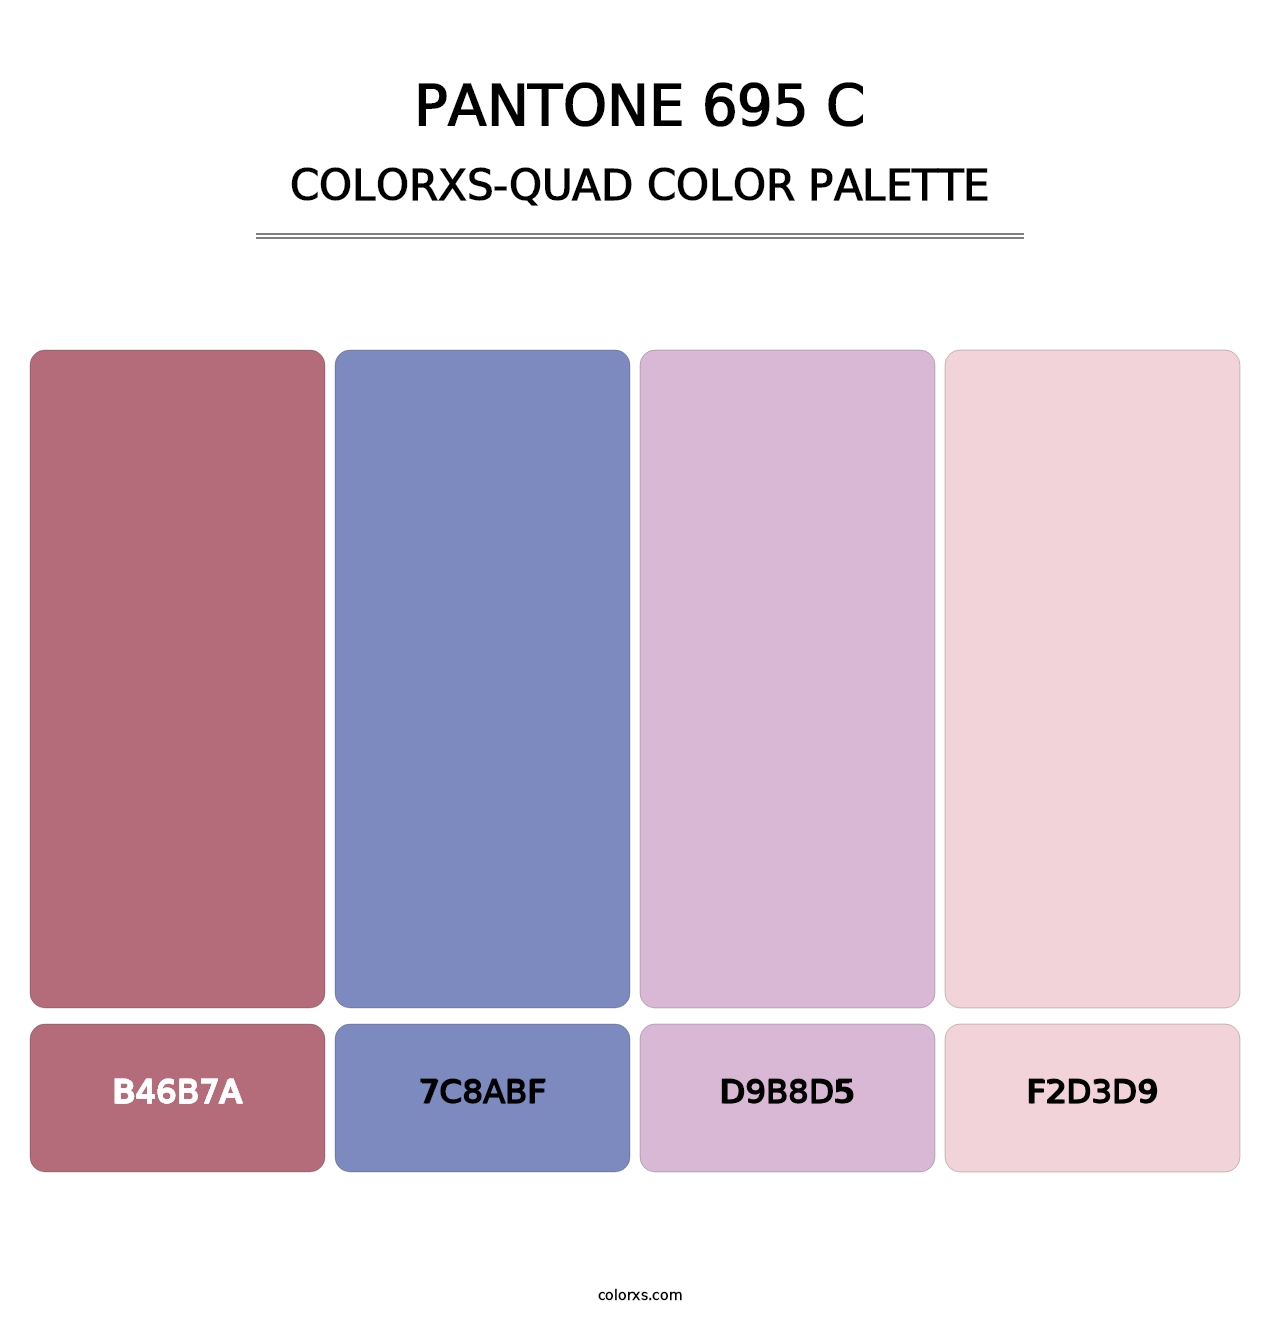 PANTONE 695 C - Colorxs Quad Palette